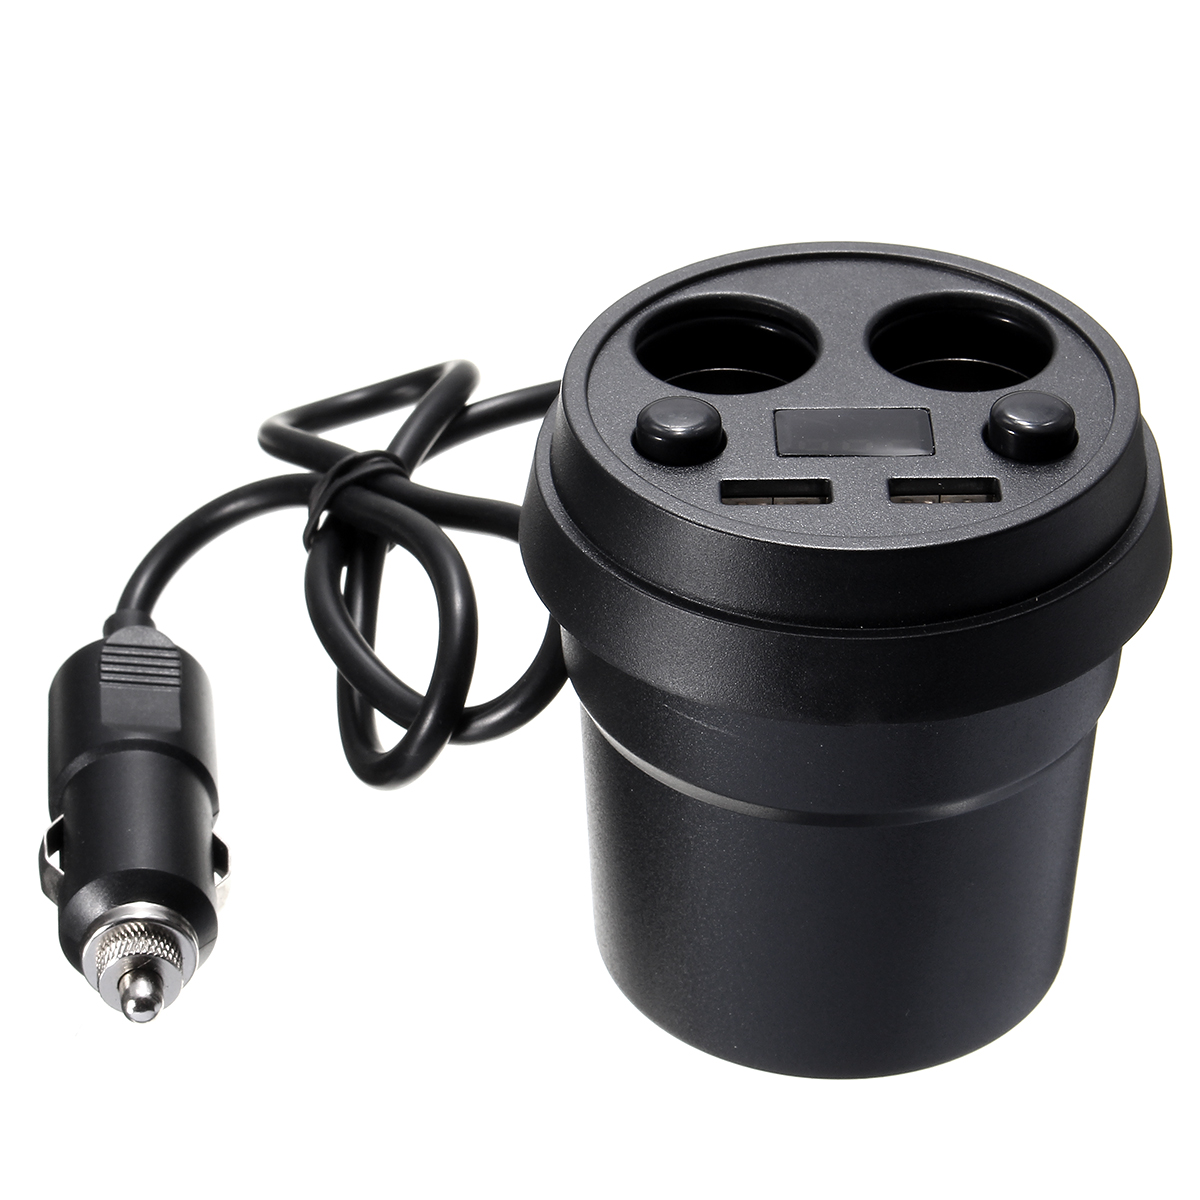 

12/24V Dual USB 3.1A Charger Car Voltmeter Cigarette Lighter Power Plug Socket